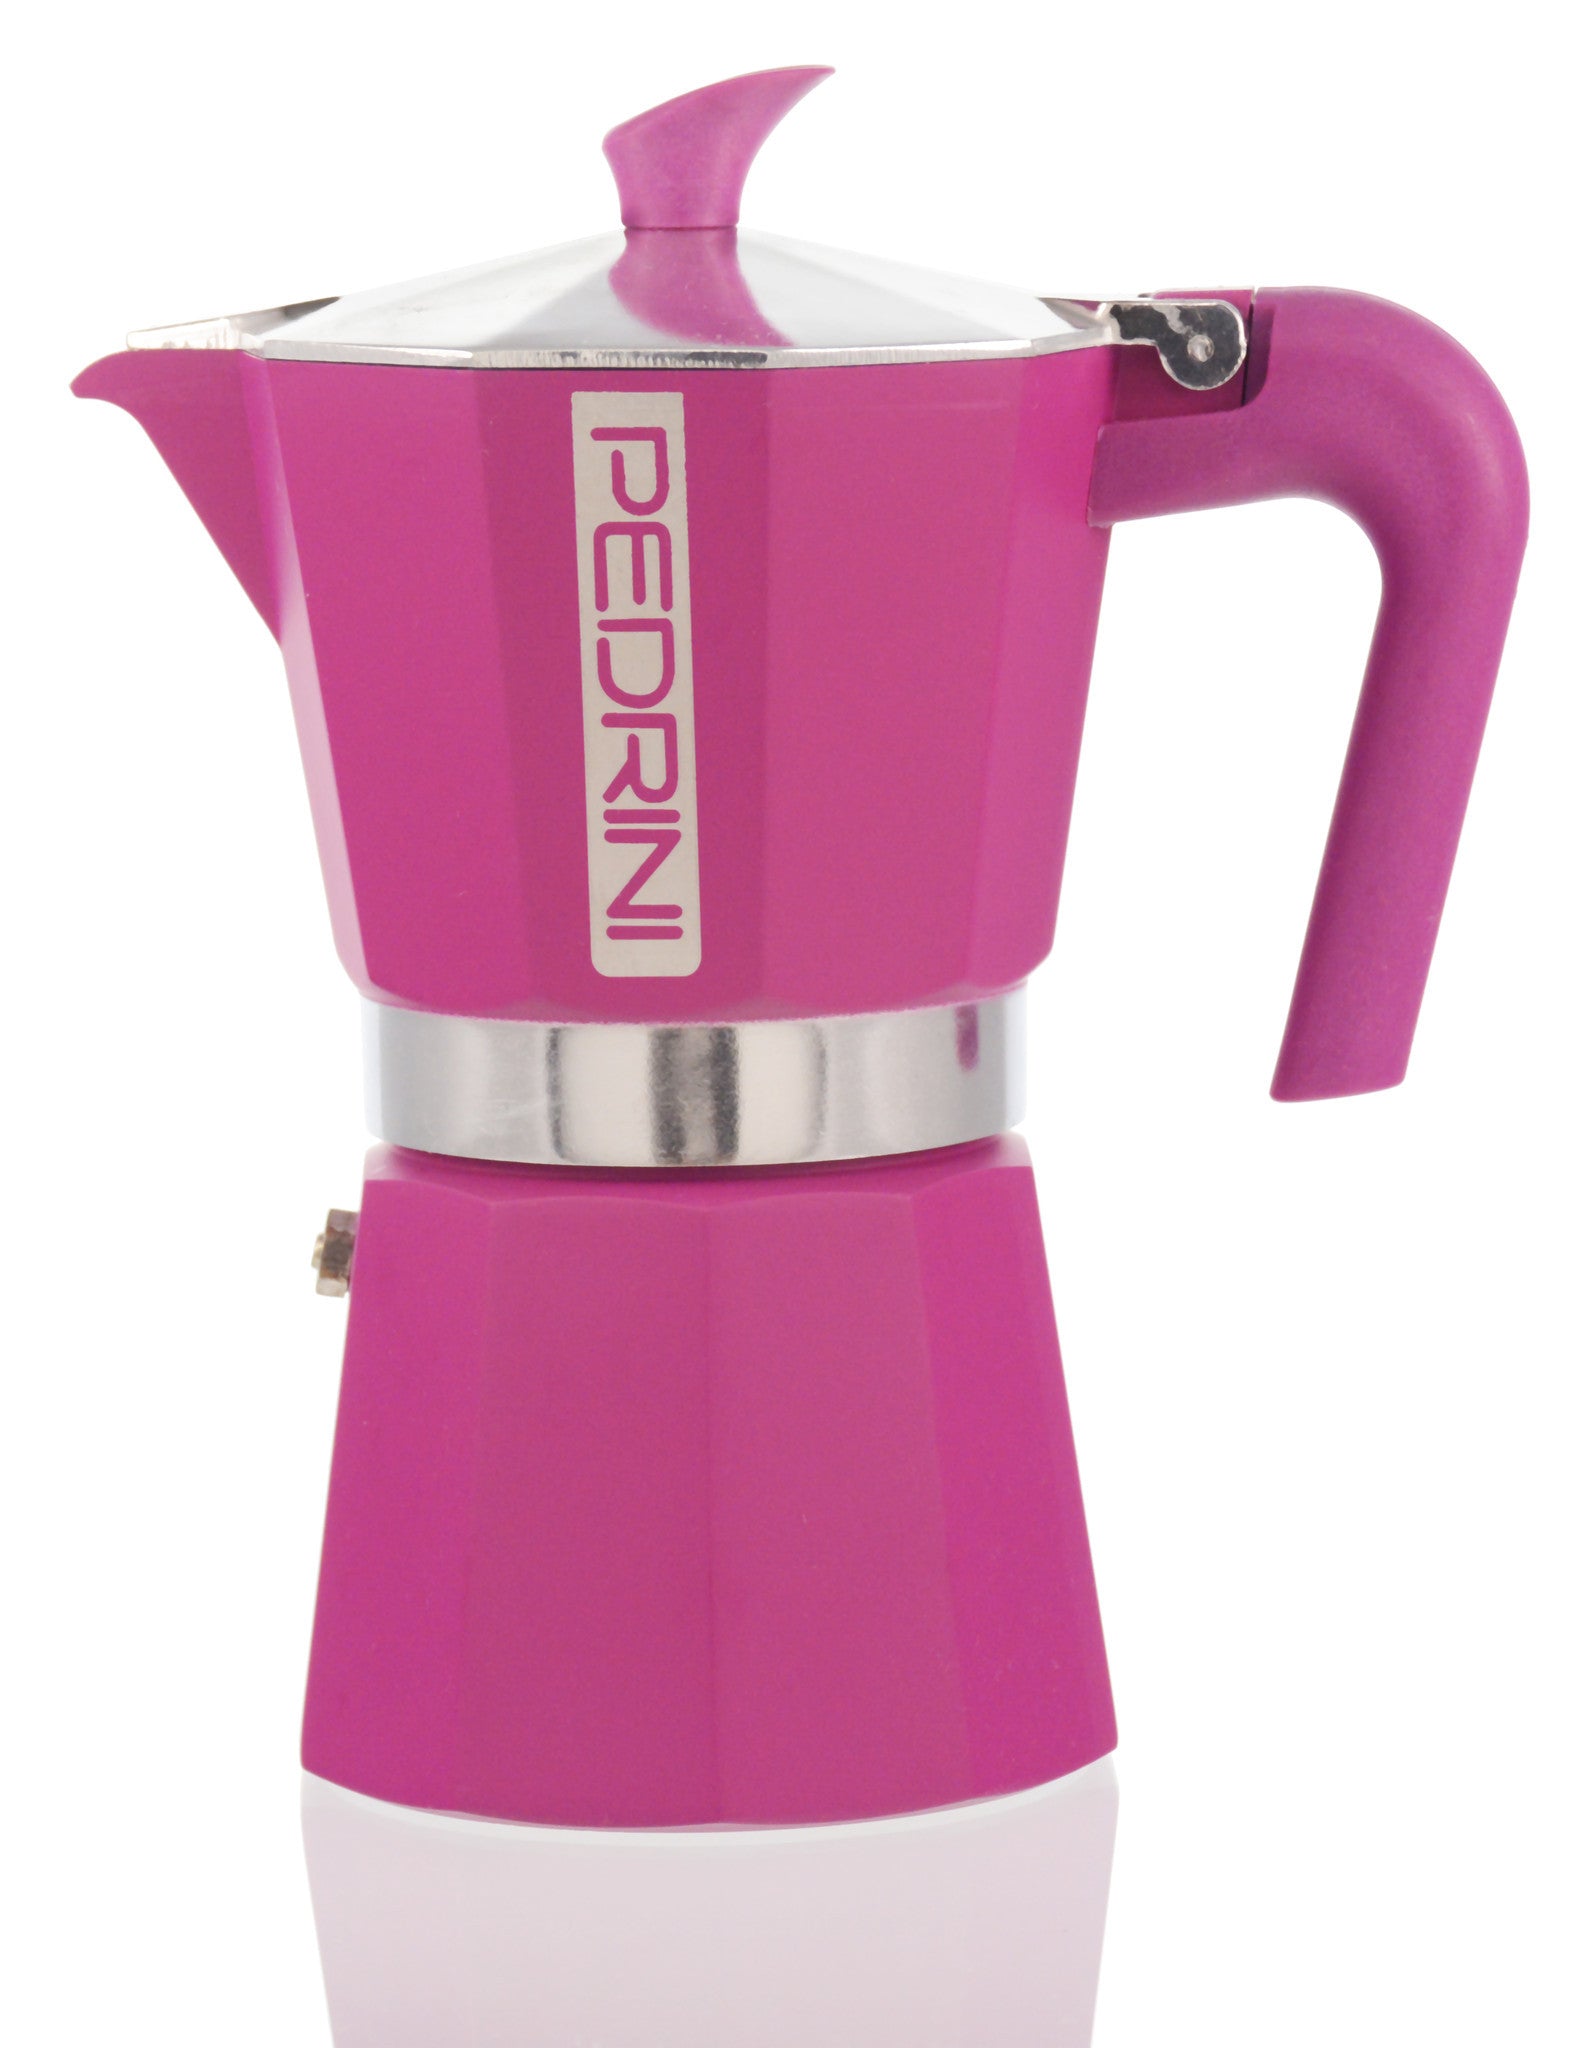 Italian Moka Pot 3 Cup Stovetop Aluminum Espresso Maker - Pink